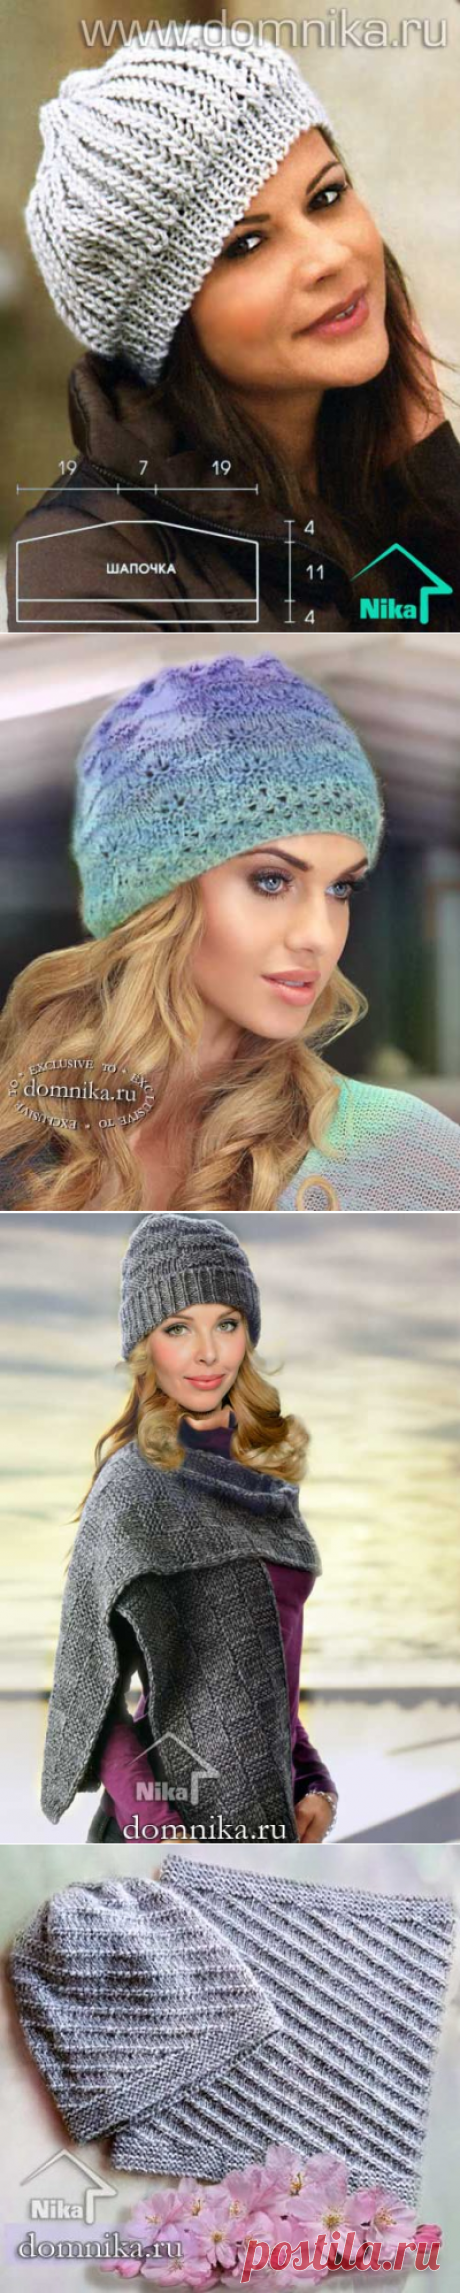 Простые шапки - шапки спицами красивые модели для женщин #шапки женские